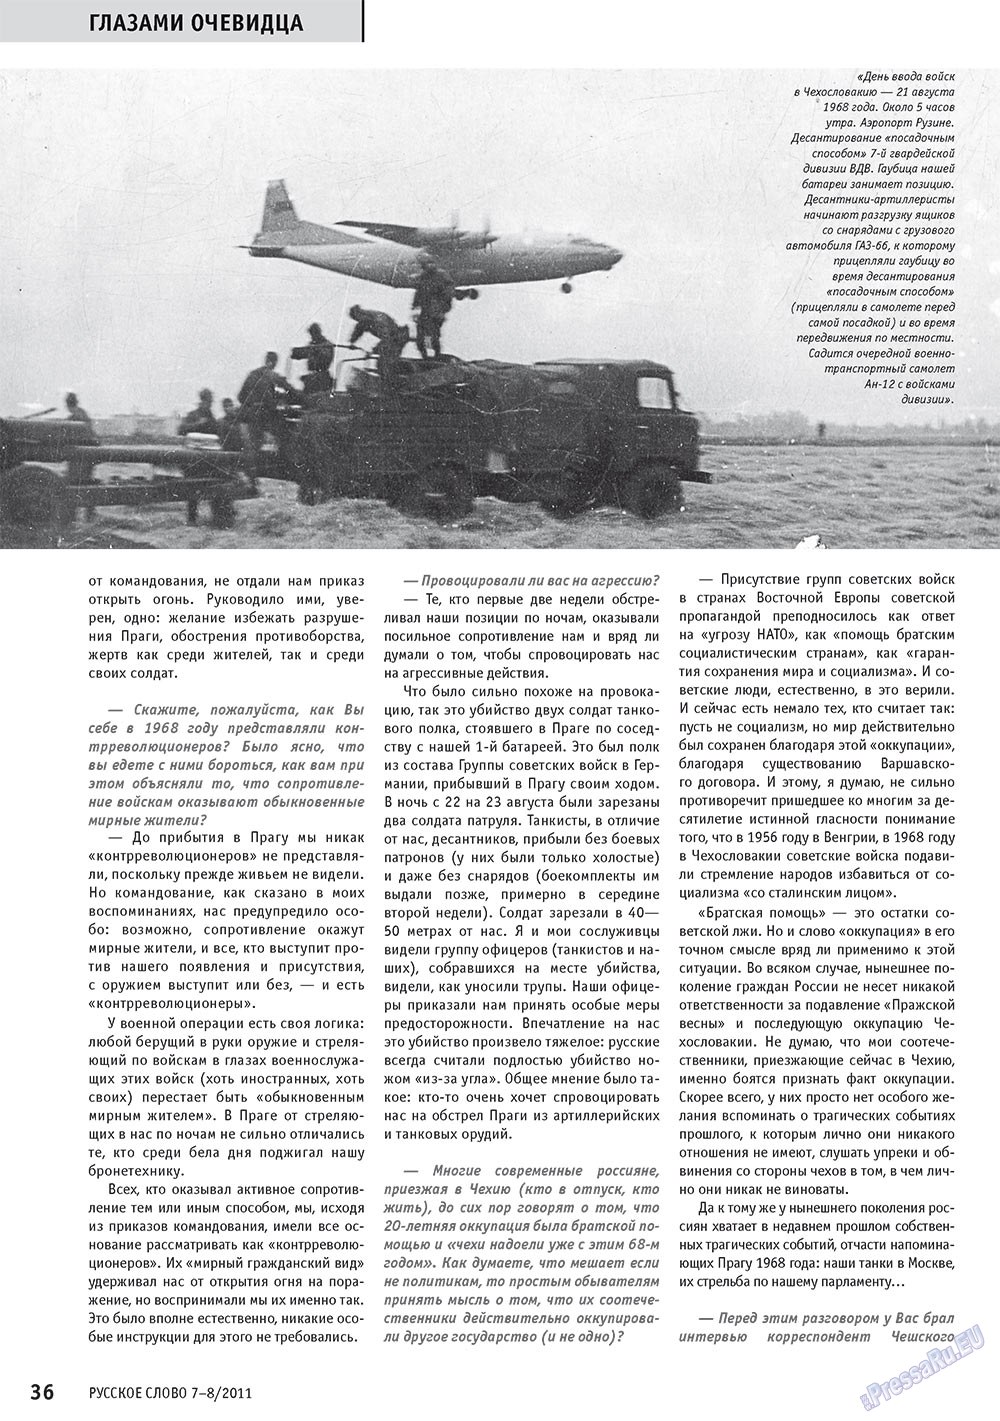 Русское слово, журнал. 2011 №7 стр.38